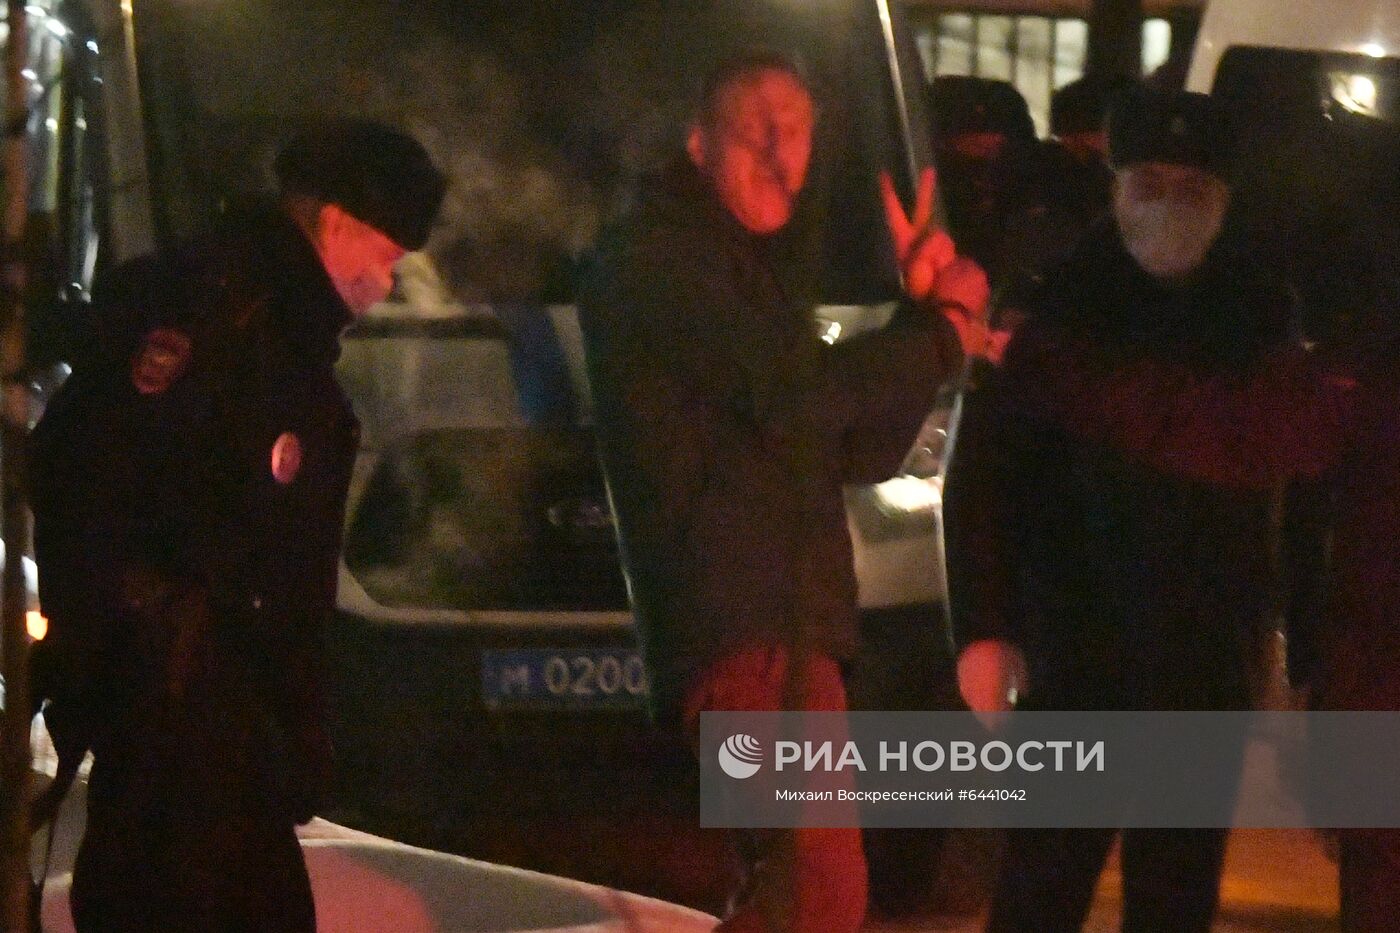 Отдел полиции, где находится задержанный А. Навальный